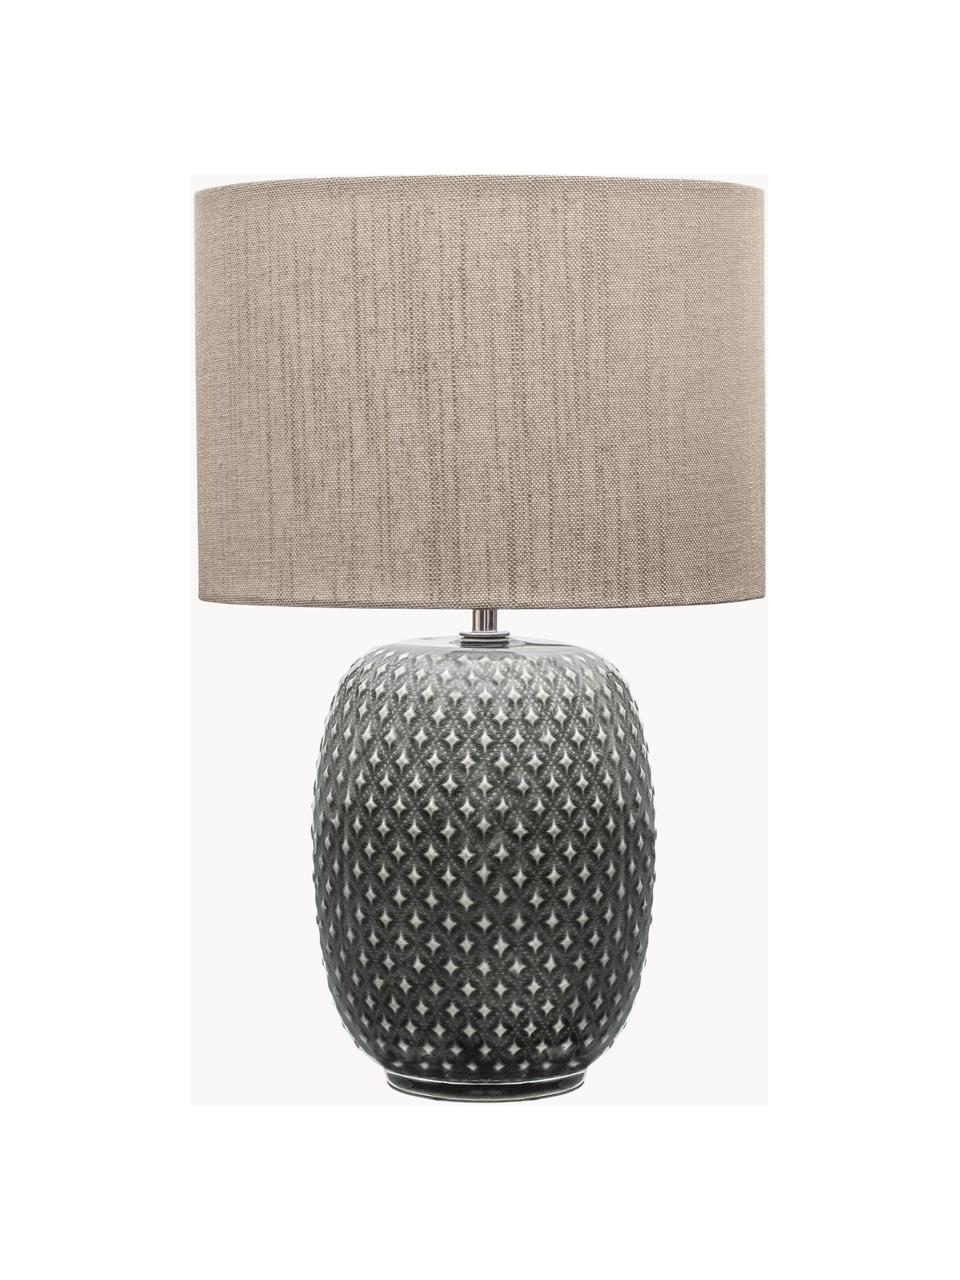 Lámpara de noche de cerámica Pretty Classy, Pantalla: tela, Cable: cubierto en tela, Beige, gris, Ø 25 x Al 40 cm